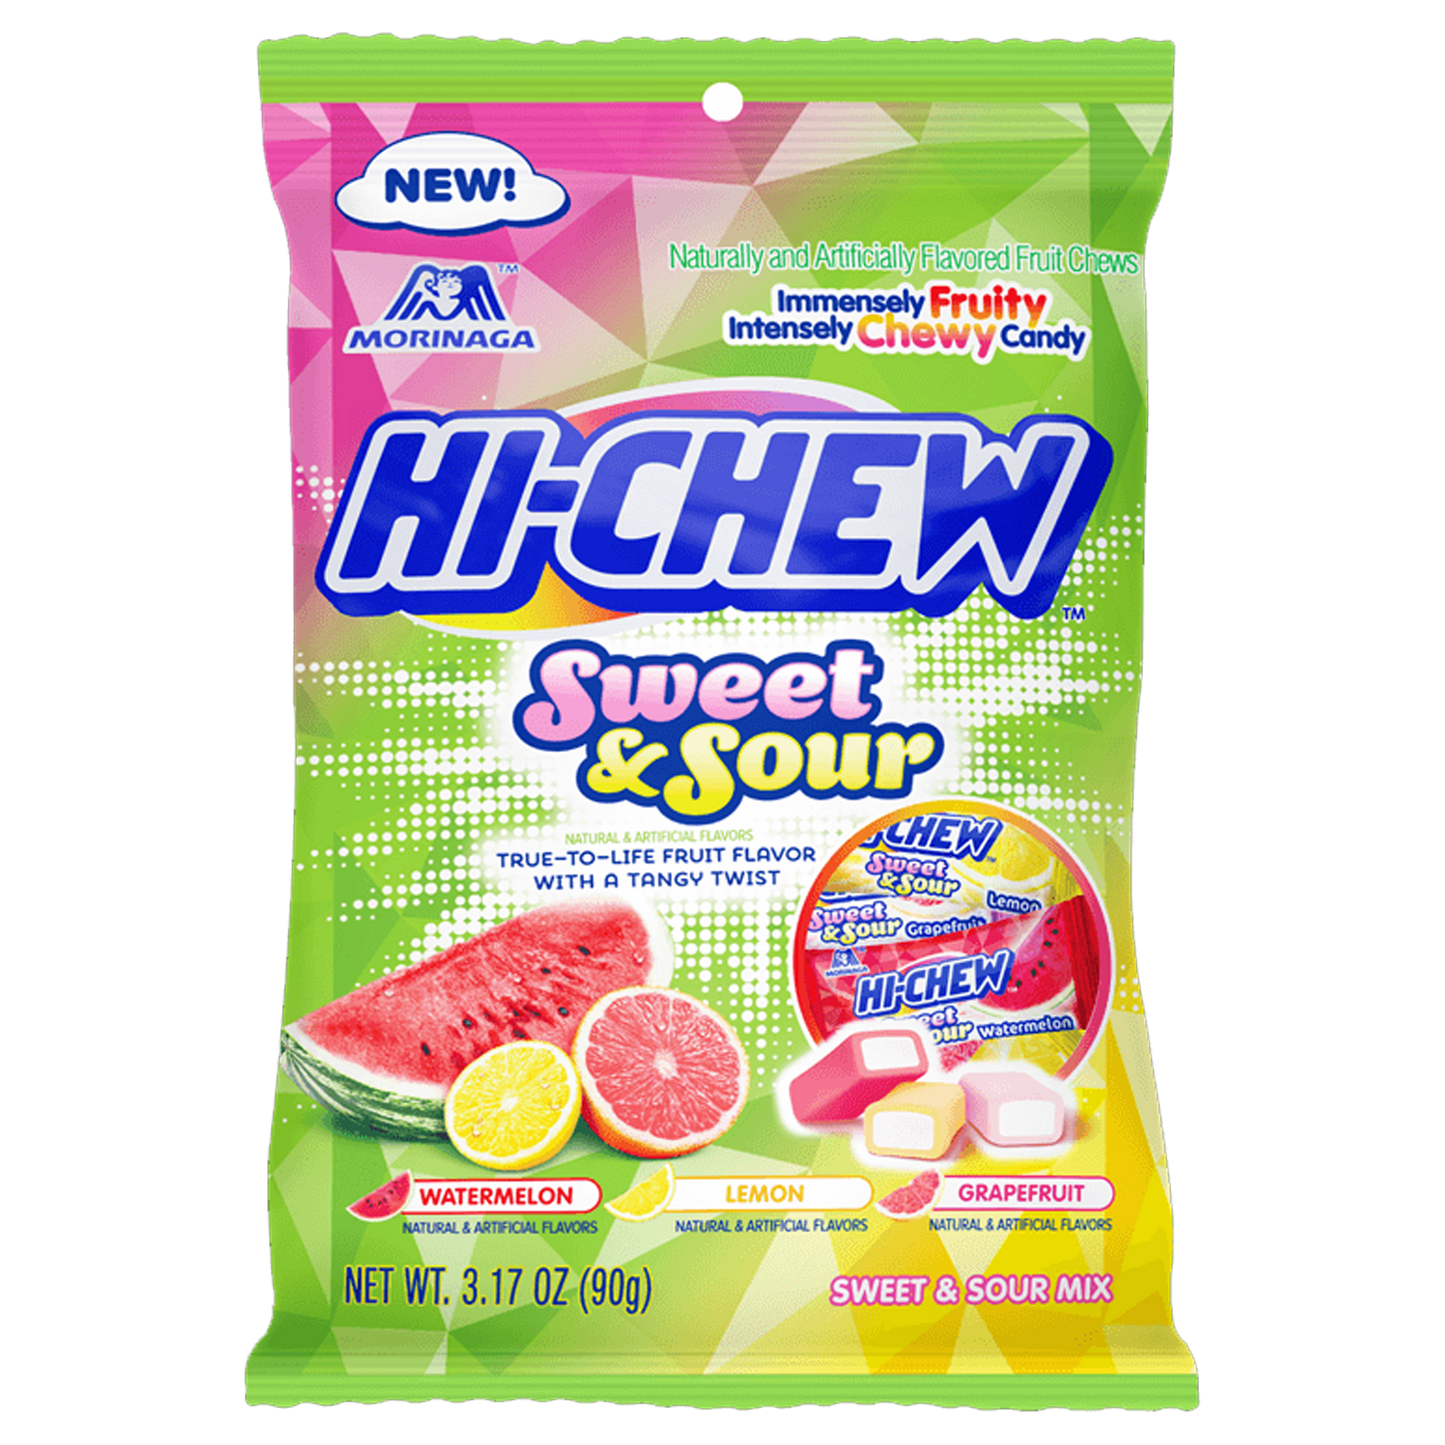 Hi-Chew Sweet & Sour Mix 90g (Watermelon, Grapefruit, Lemon)